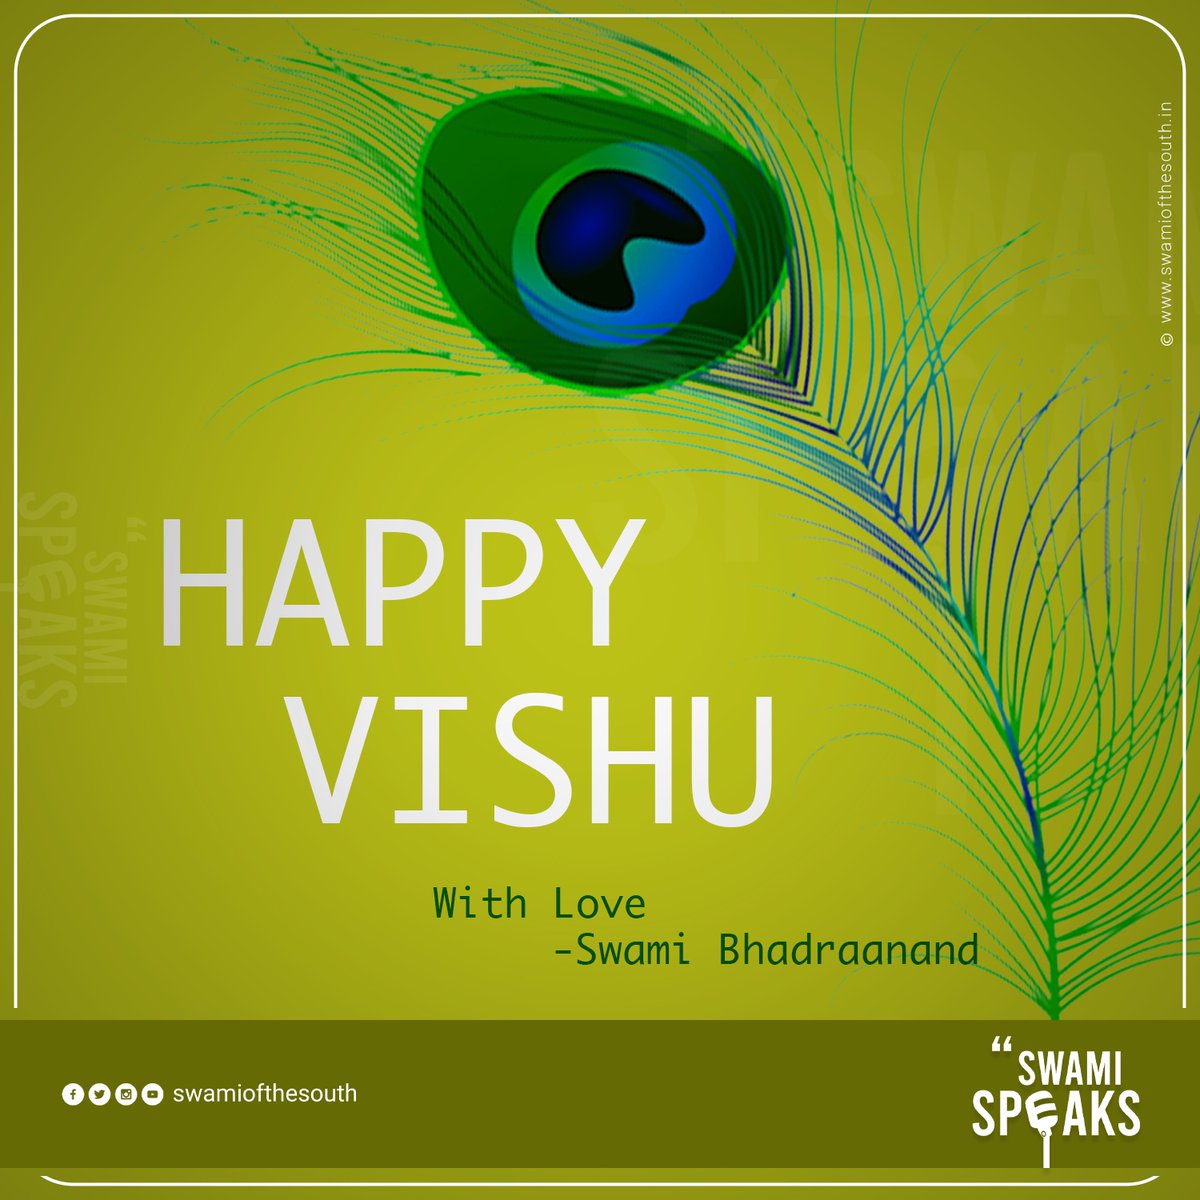 ഏവർക്കും ഹൃദയം നിറഞ്ഞ #വിഷു ആശംസകൾ...
#SwamiSpeaks #Vishu #Vishu2023 #VishuSpecial #Kerala